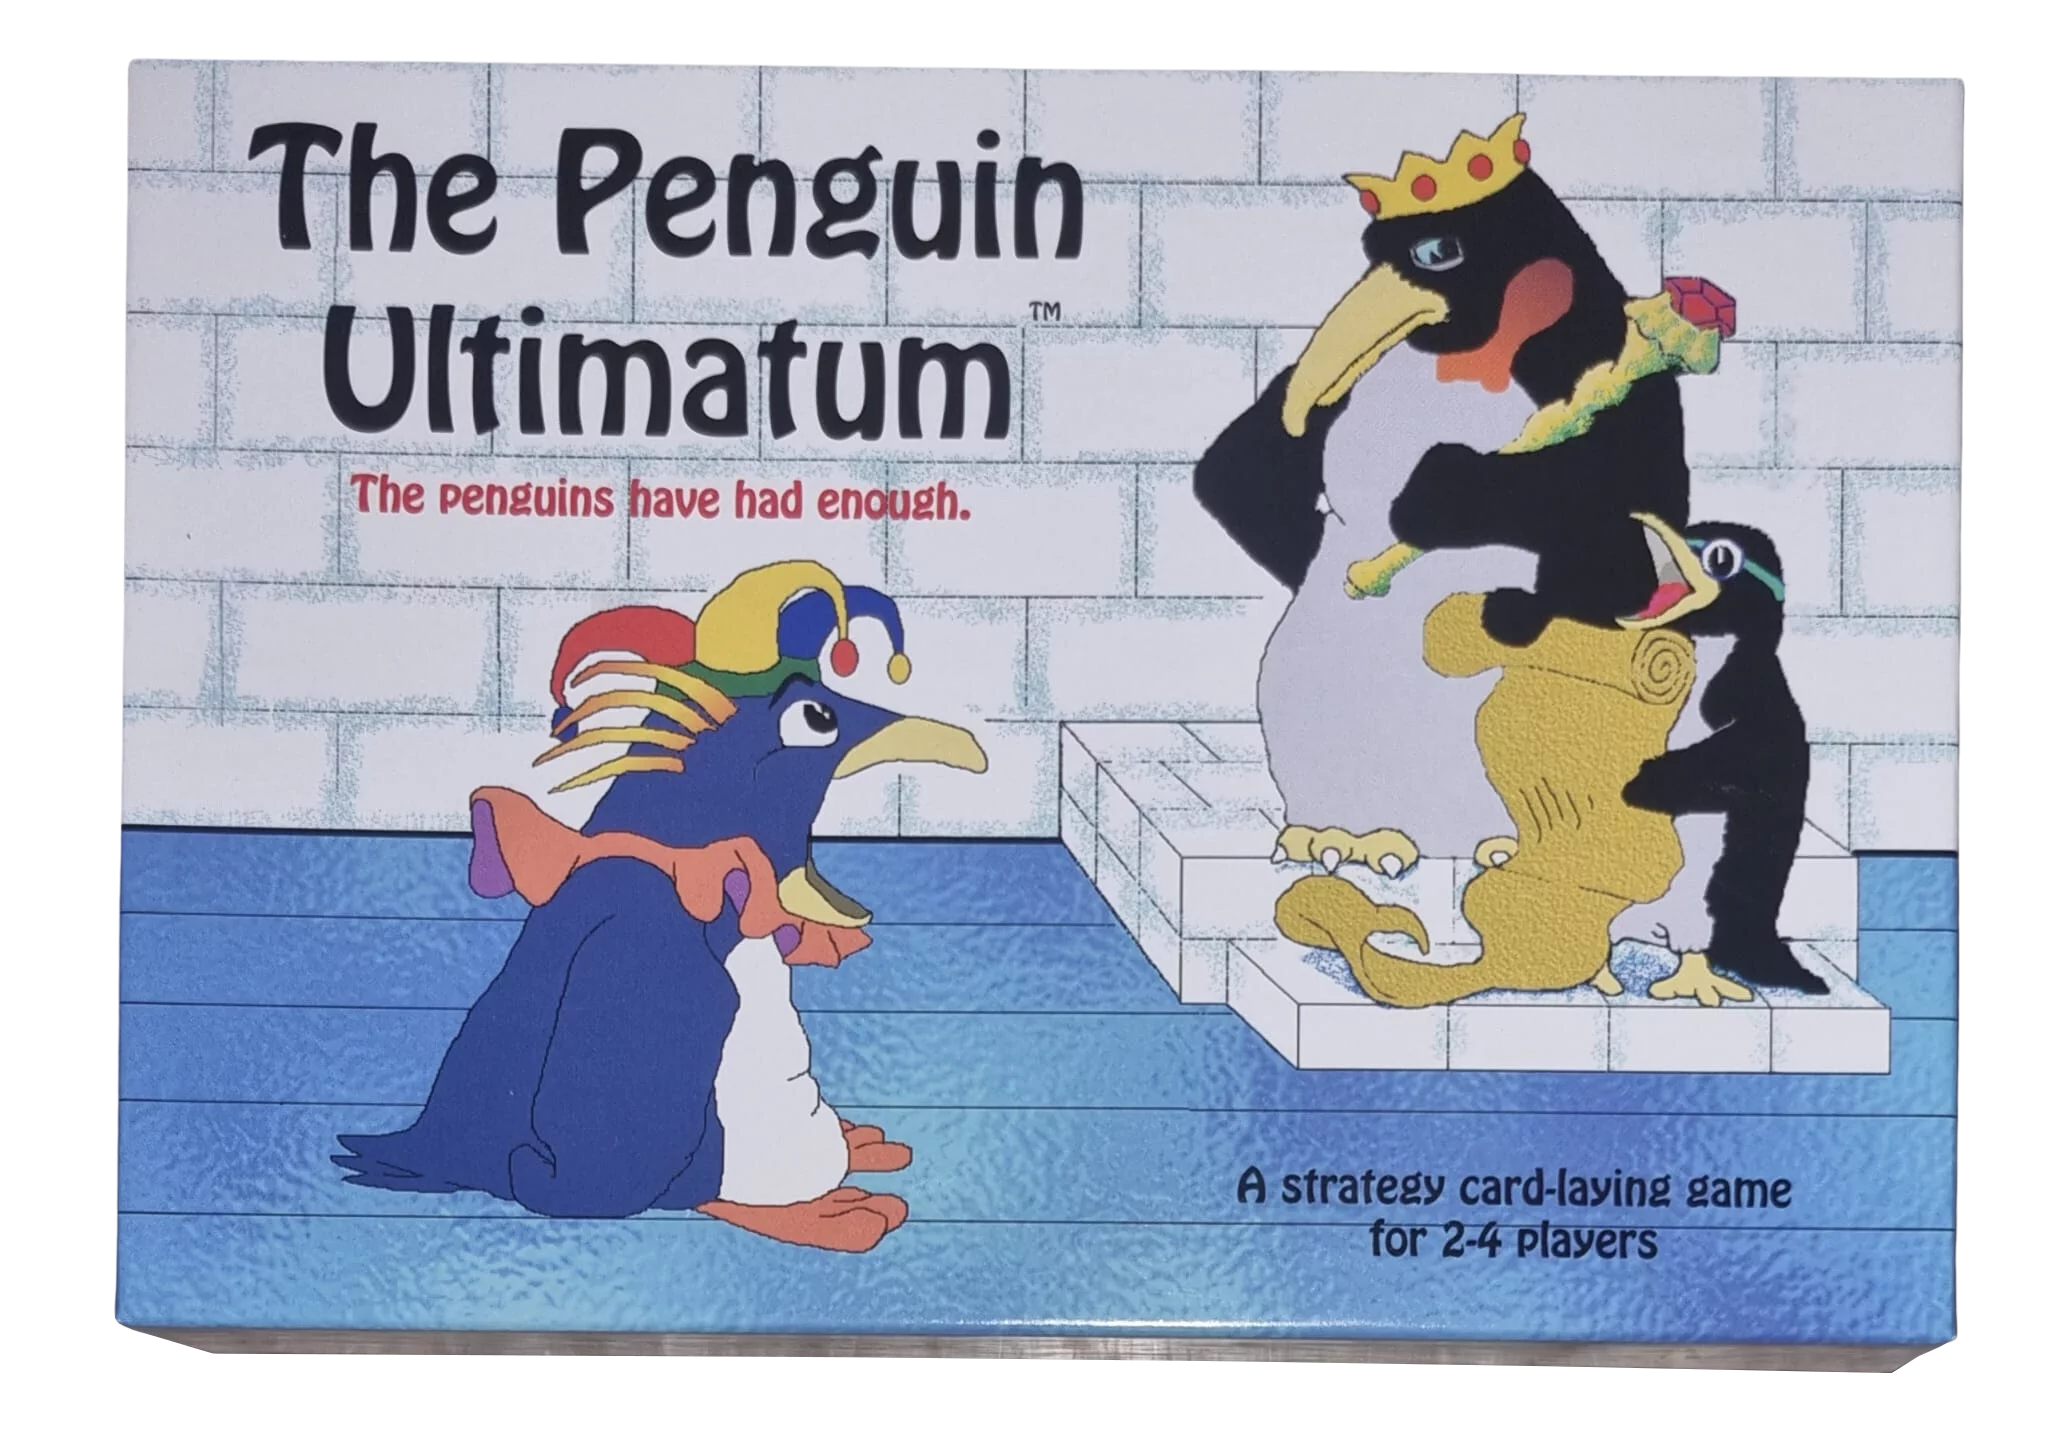 The Penguin Ultimatum